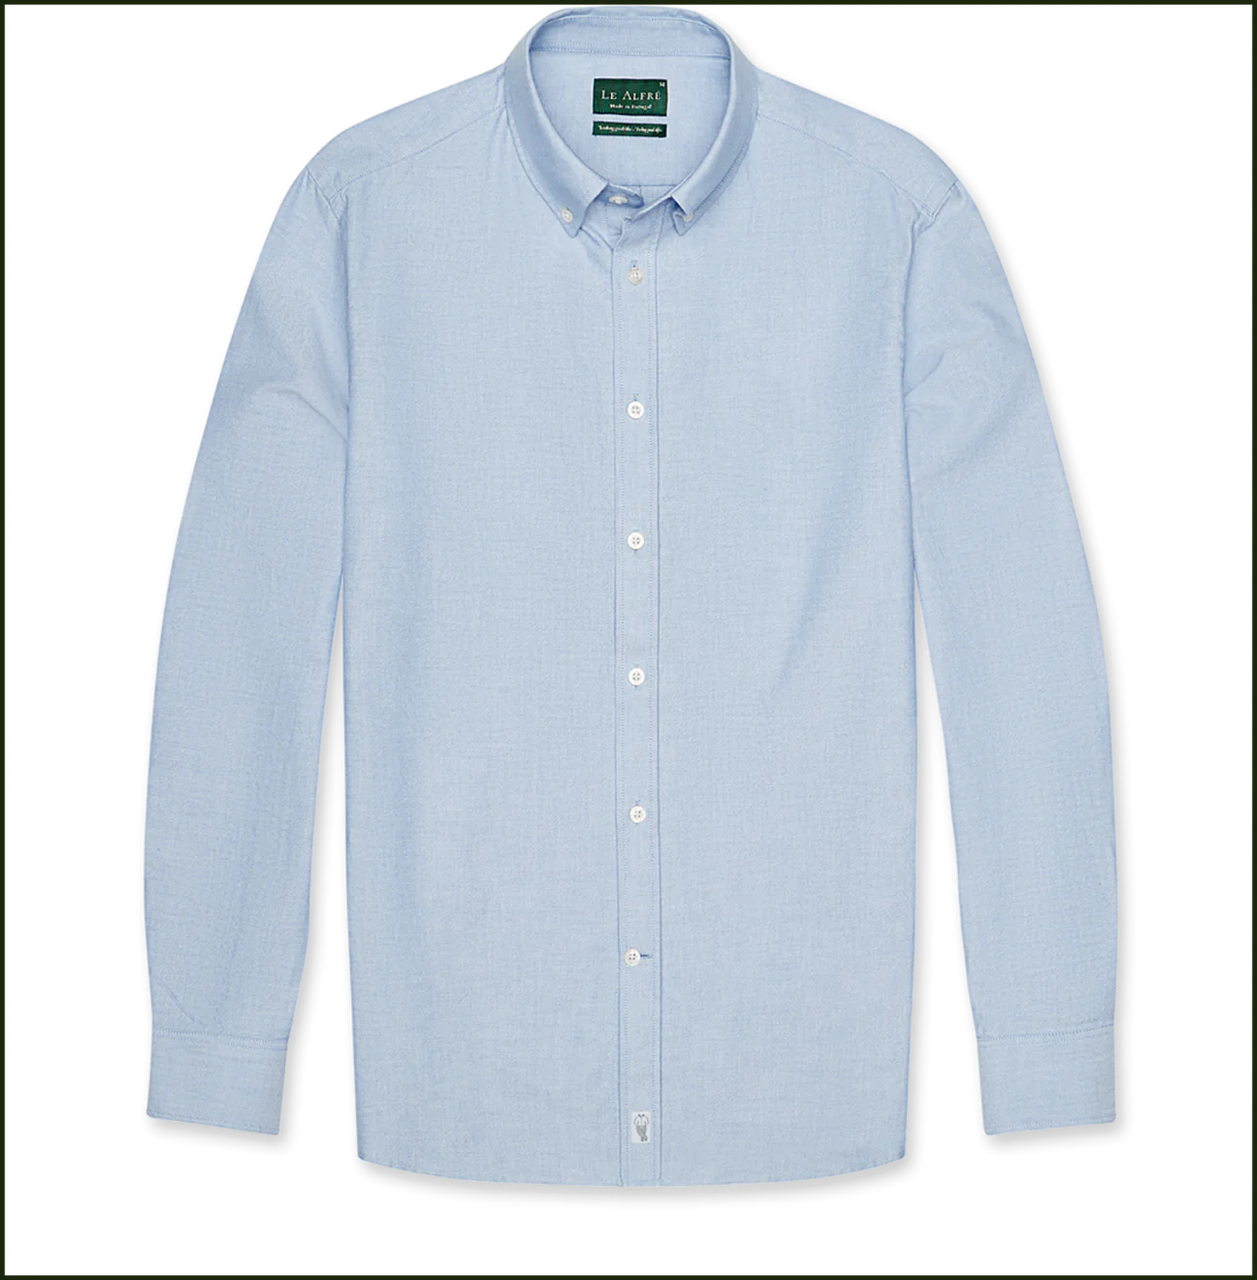 Le Alfré 'Le Bleu' Oxford Shirt